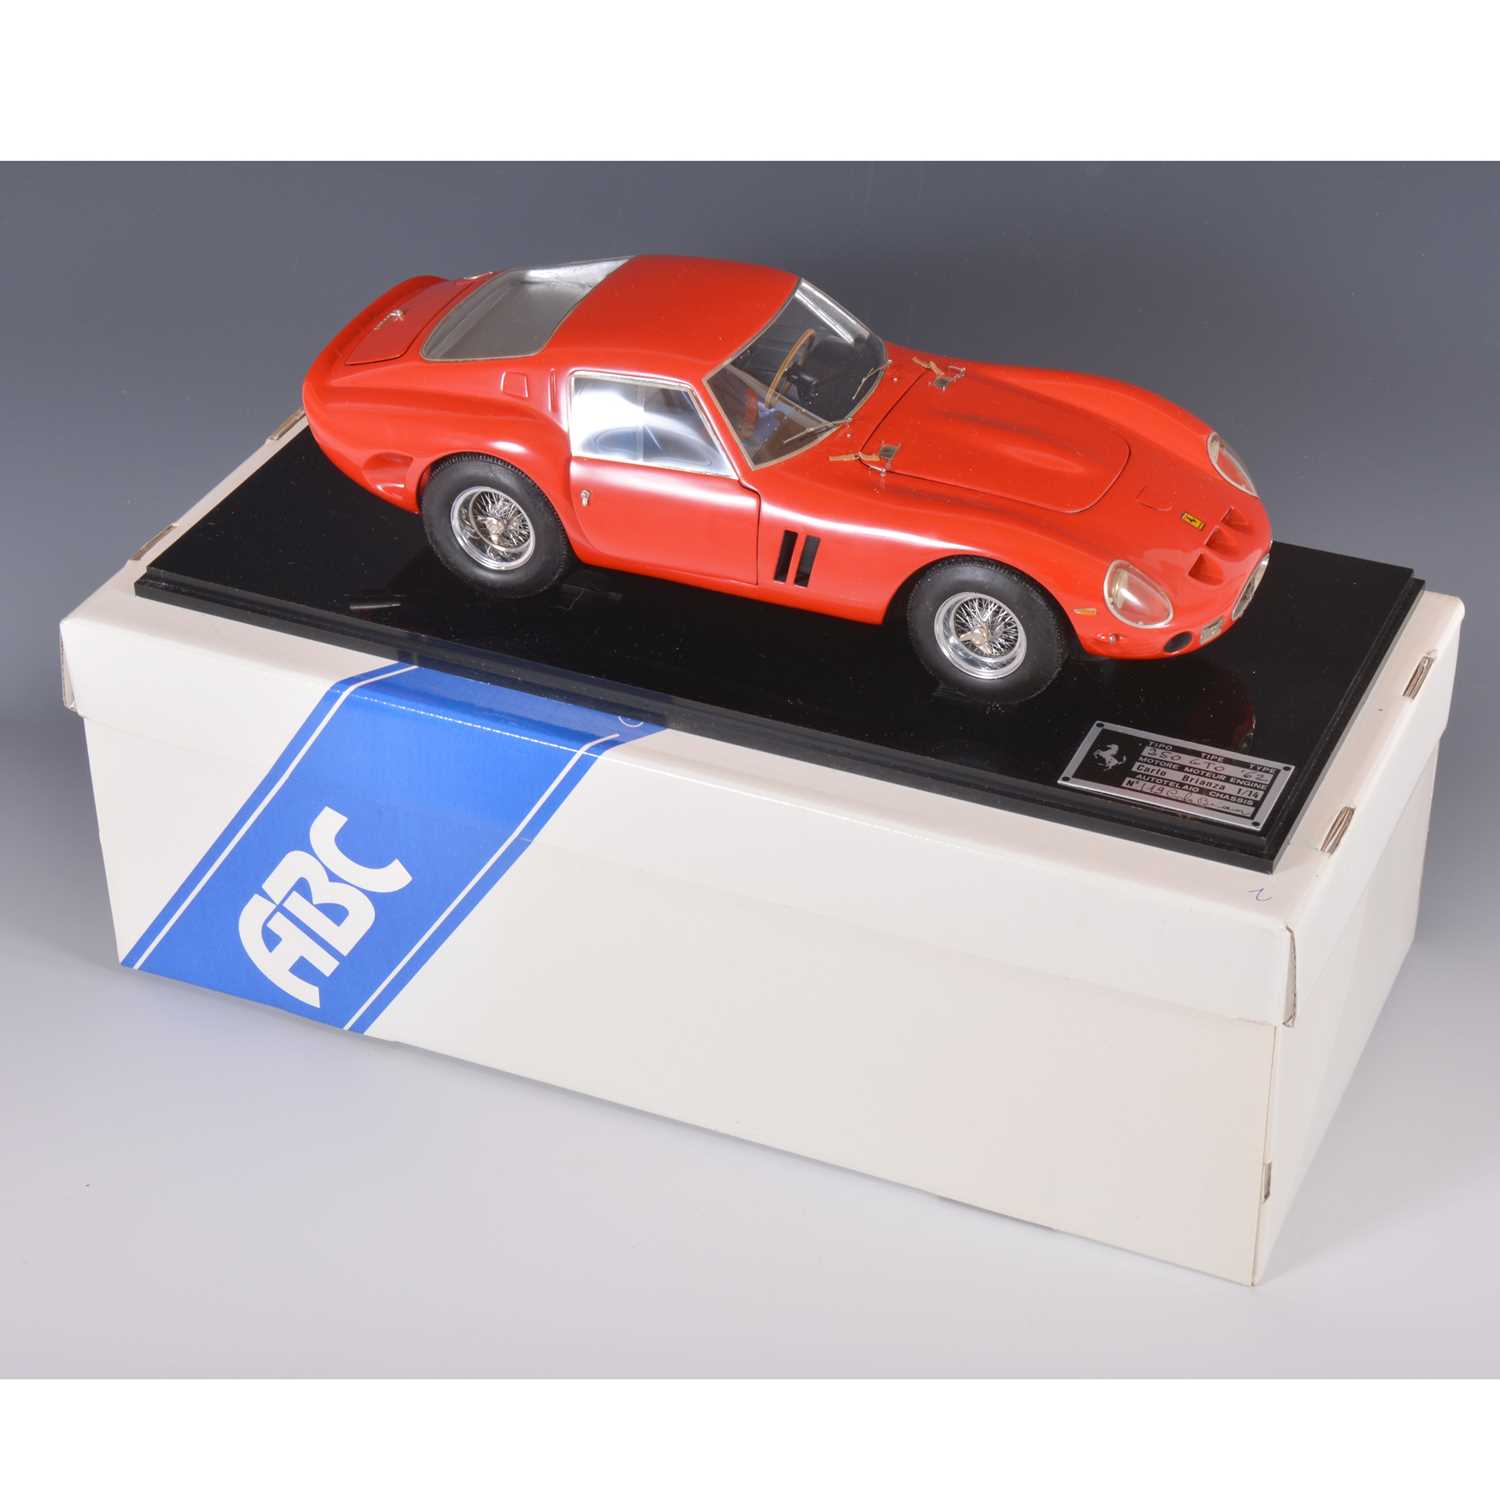 Lot 41 - ABC Modello Carlo Brianza 1:14 scale model; Ferrari 250 GTO (1962)